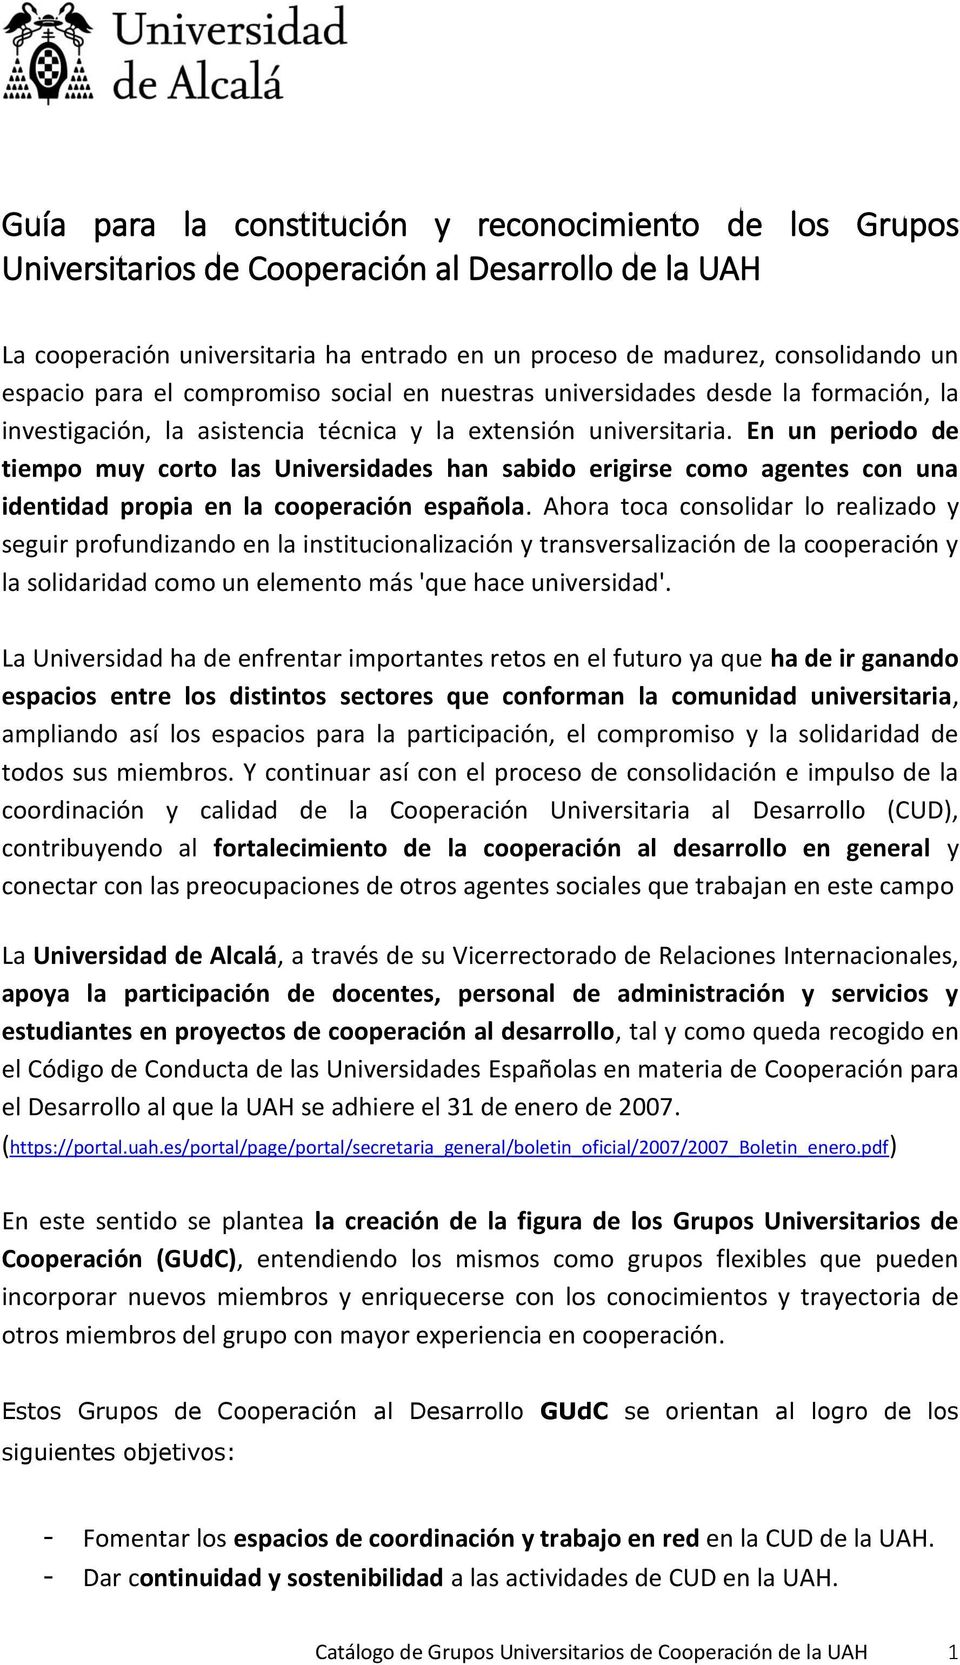 En un periodo de tiempo muy corto las Universidades han sabido erigirse como agentes con una identidad propia en la cooperación española.